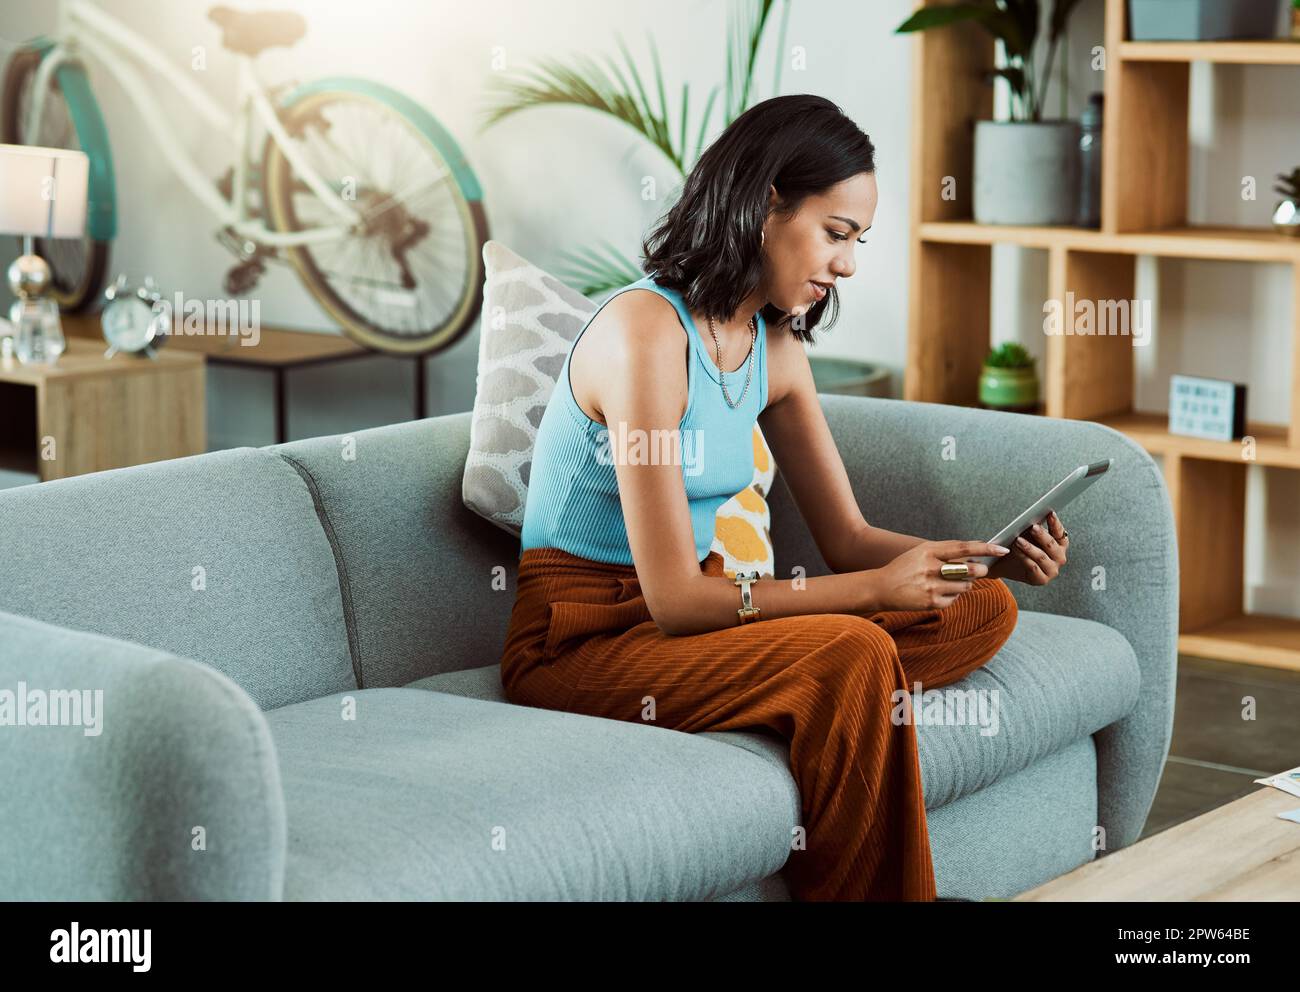 Sie können auf einem Tablet nach Spielfilmen suchen, Videos streamen und in sozialen Medien scrollen, während Sie sich allein auf dem Sofa zu Hause entspannen. Elegant, tr Stockfoto